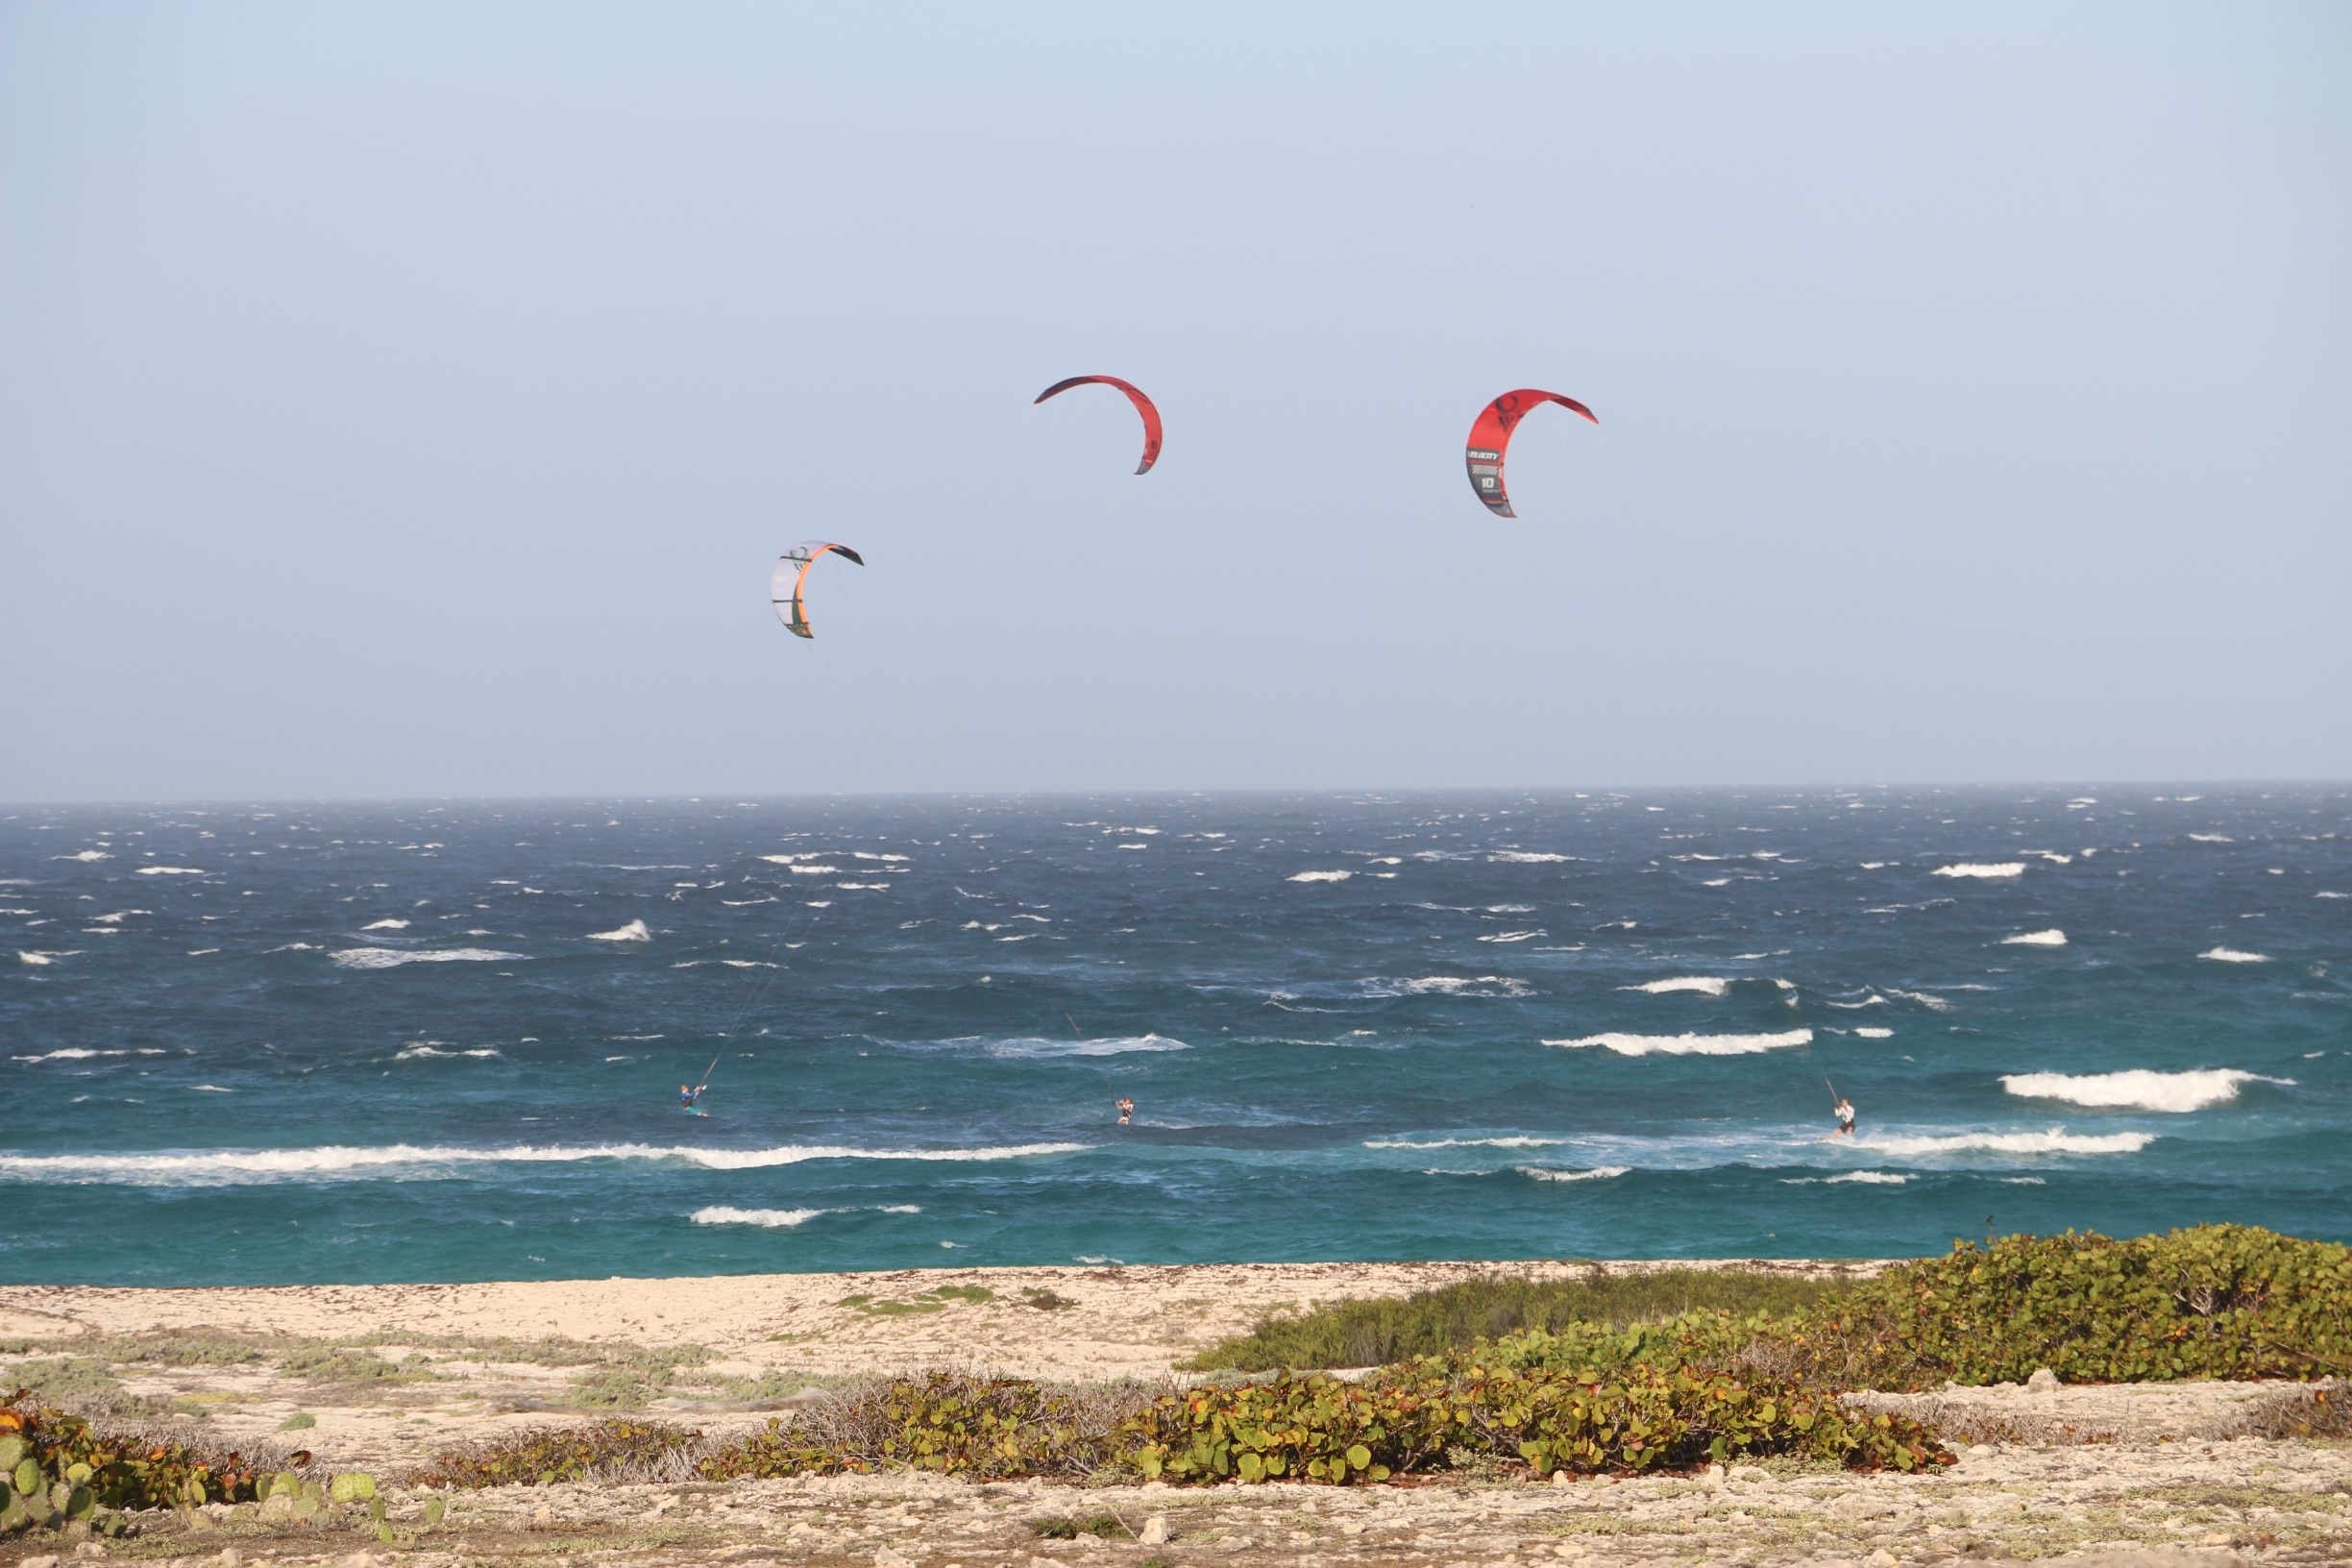 Kite surfing in Aruba.